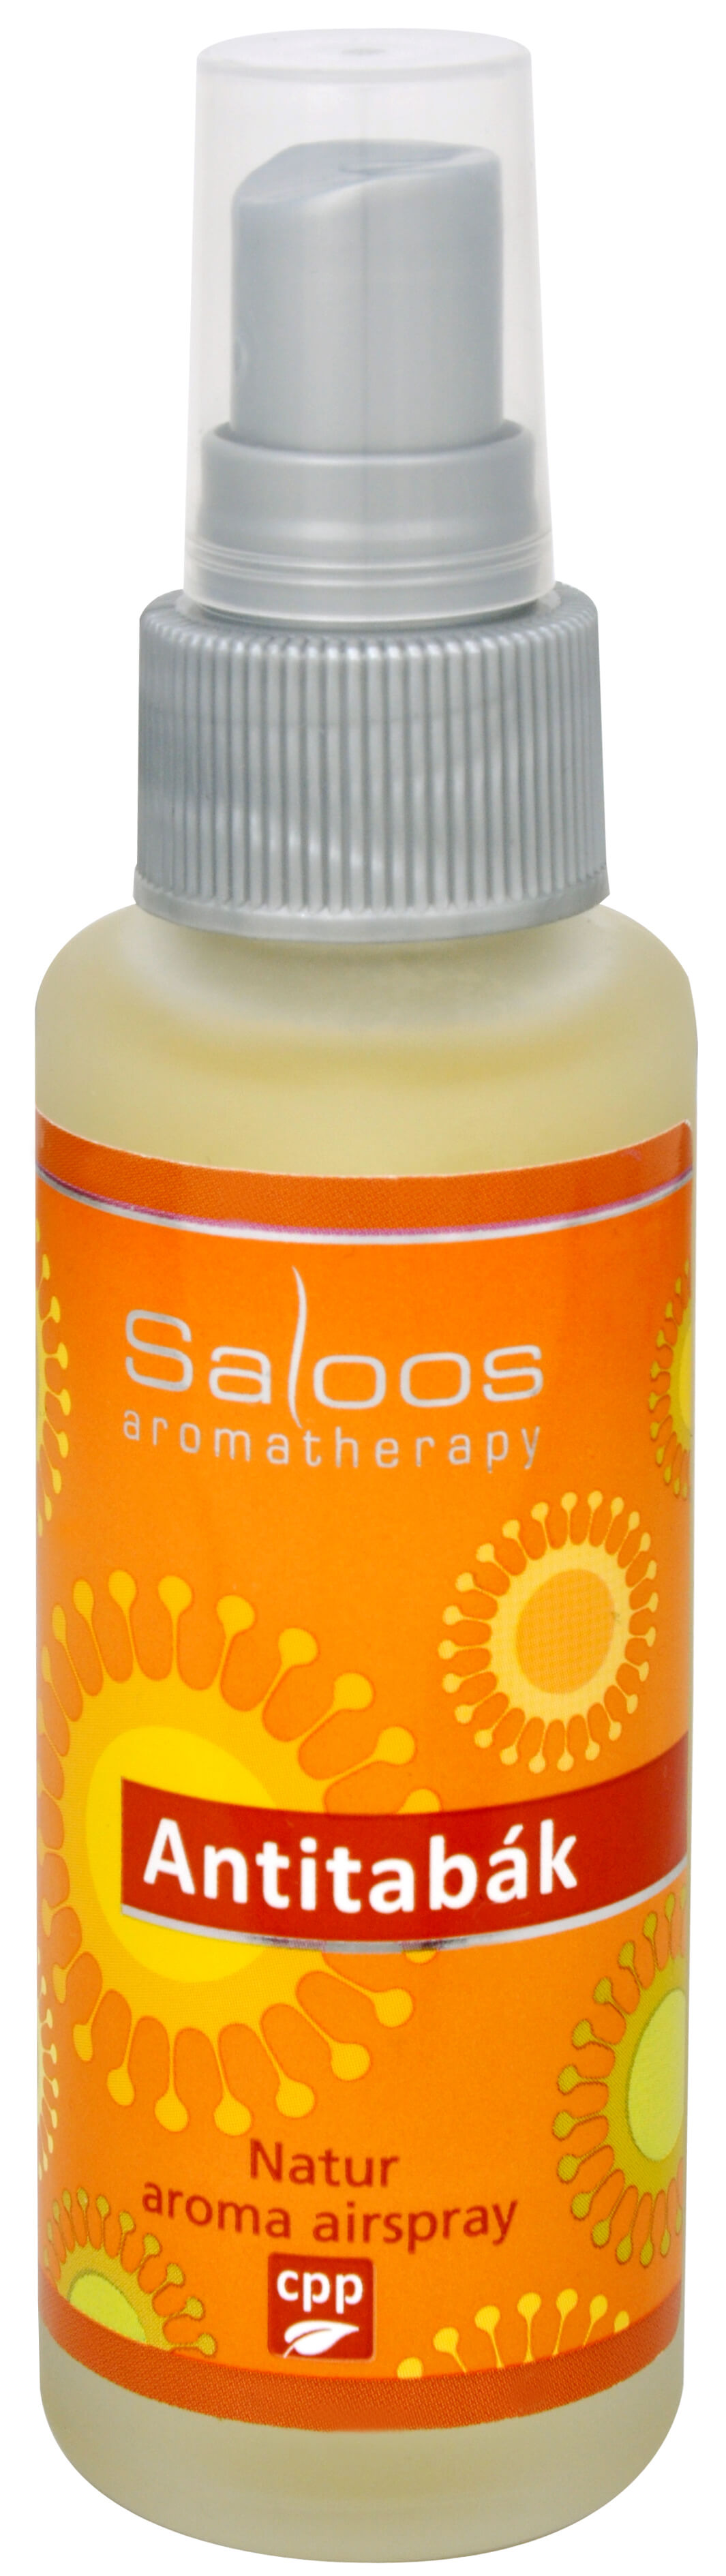 Saloos Natur aroma airspray - Antitabák (přírodní osvěžovač vzduchu) 50 ml